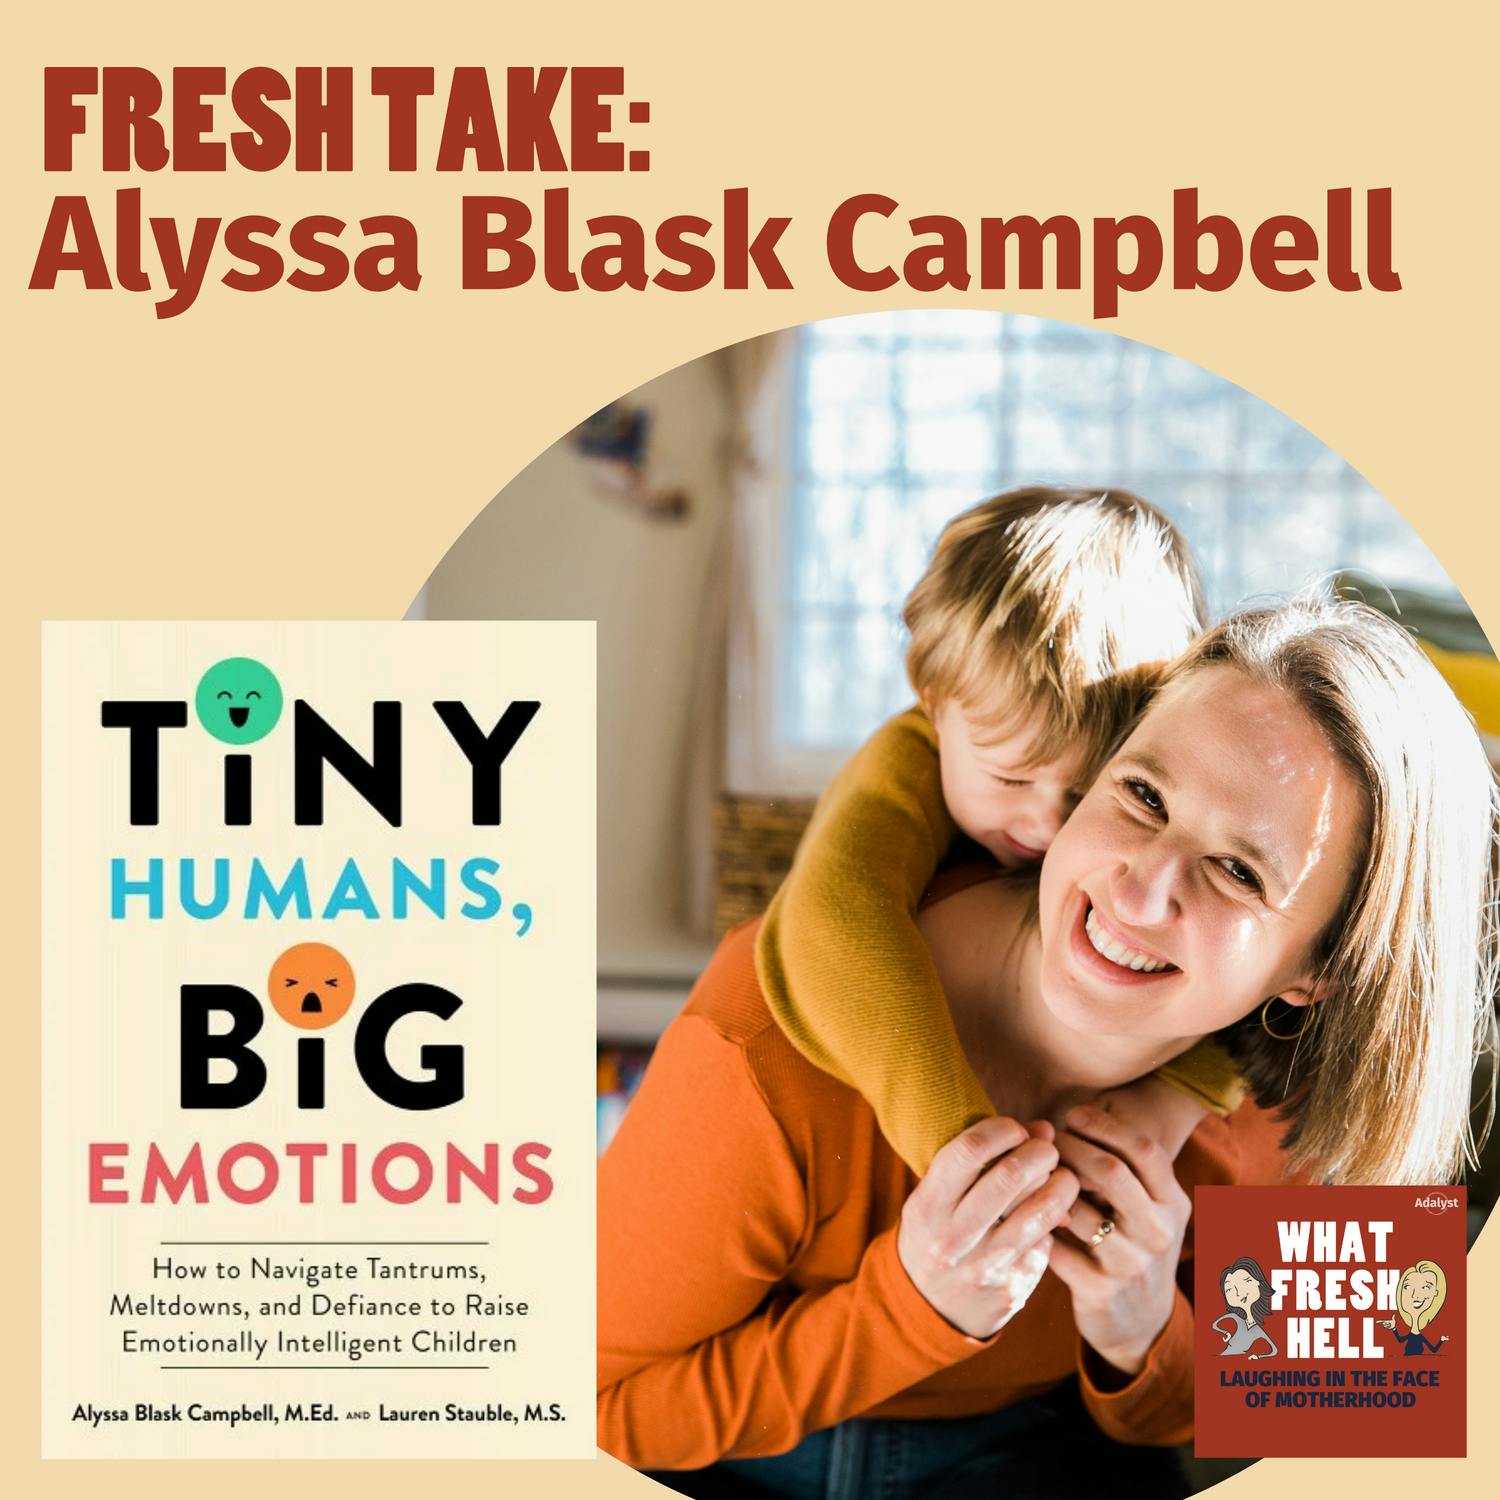 Fresh Take: Alyssa Blask Campbell on Raising Emotionally Intelligent Kids